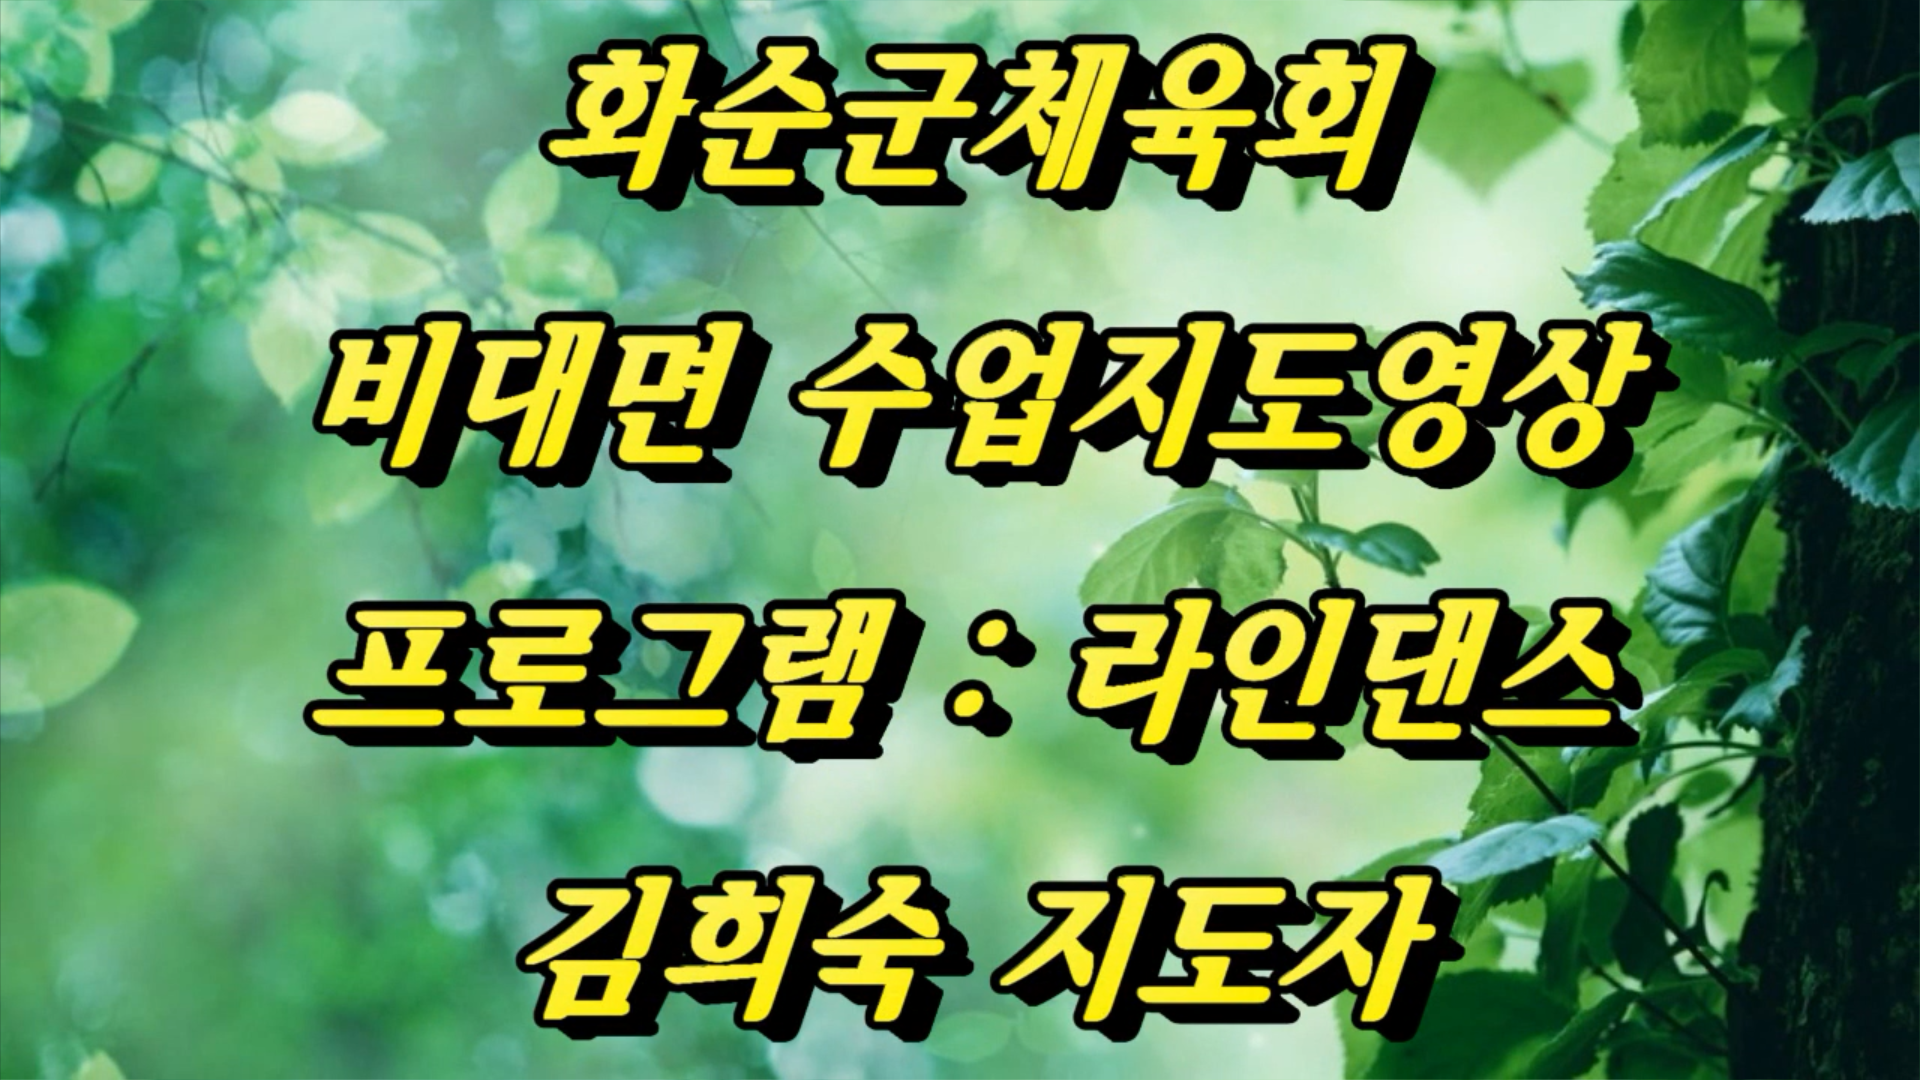 화순군체육회-7월라인댄스(섬마을선생님)